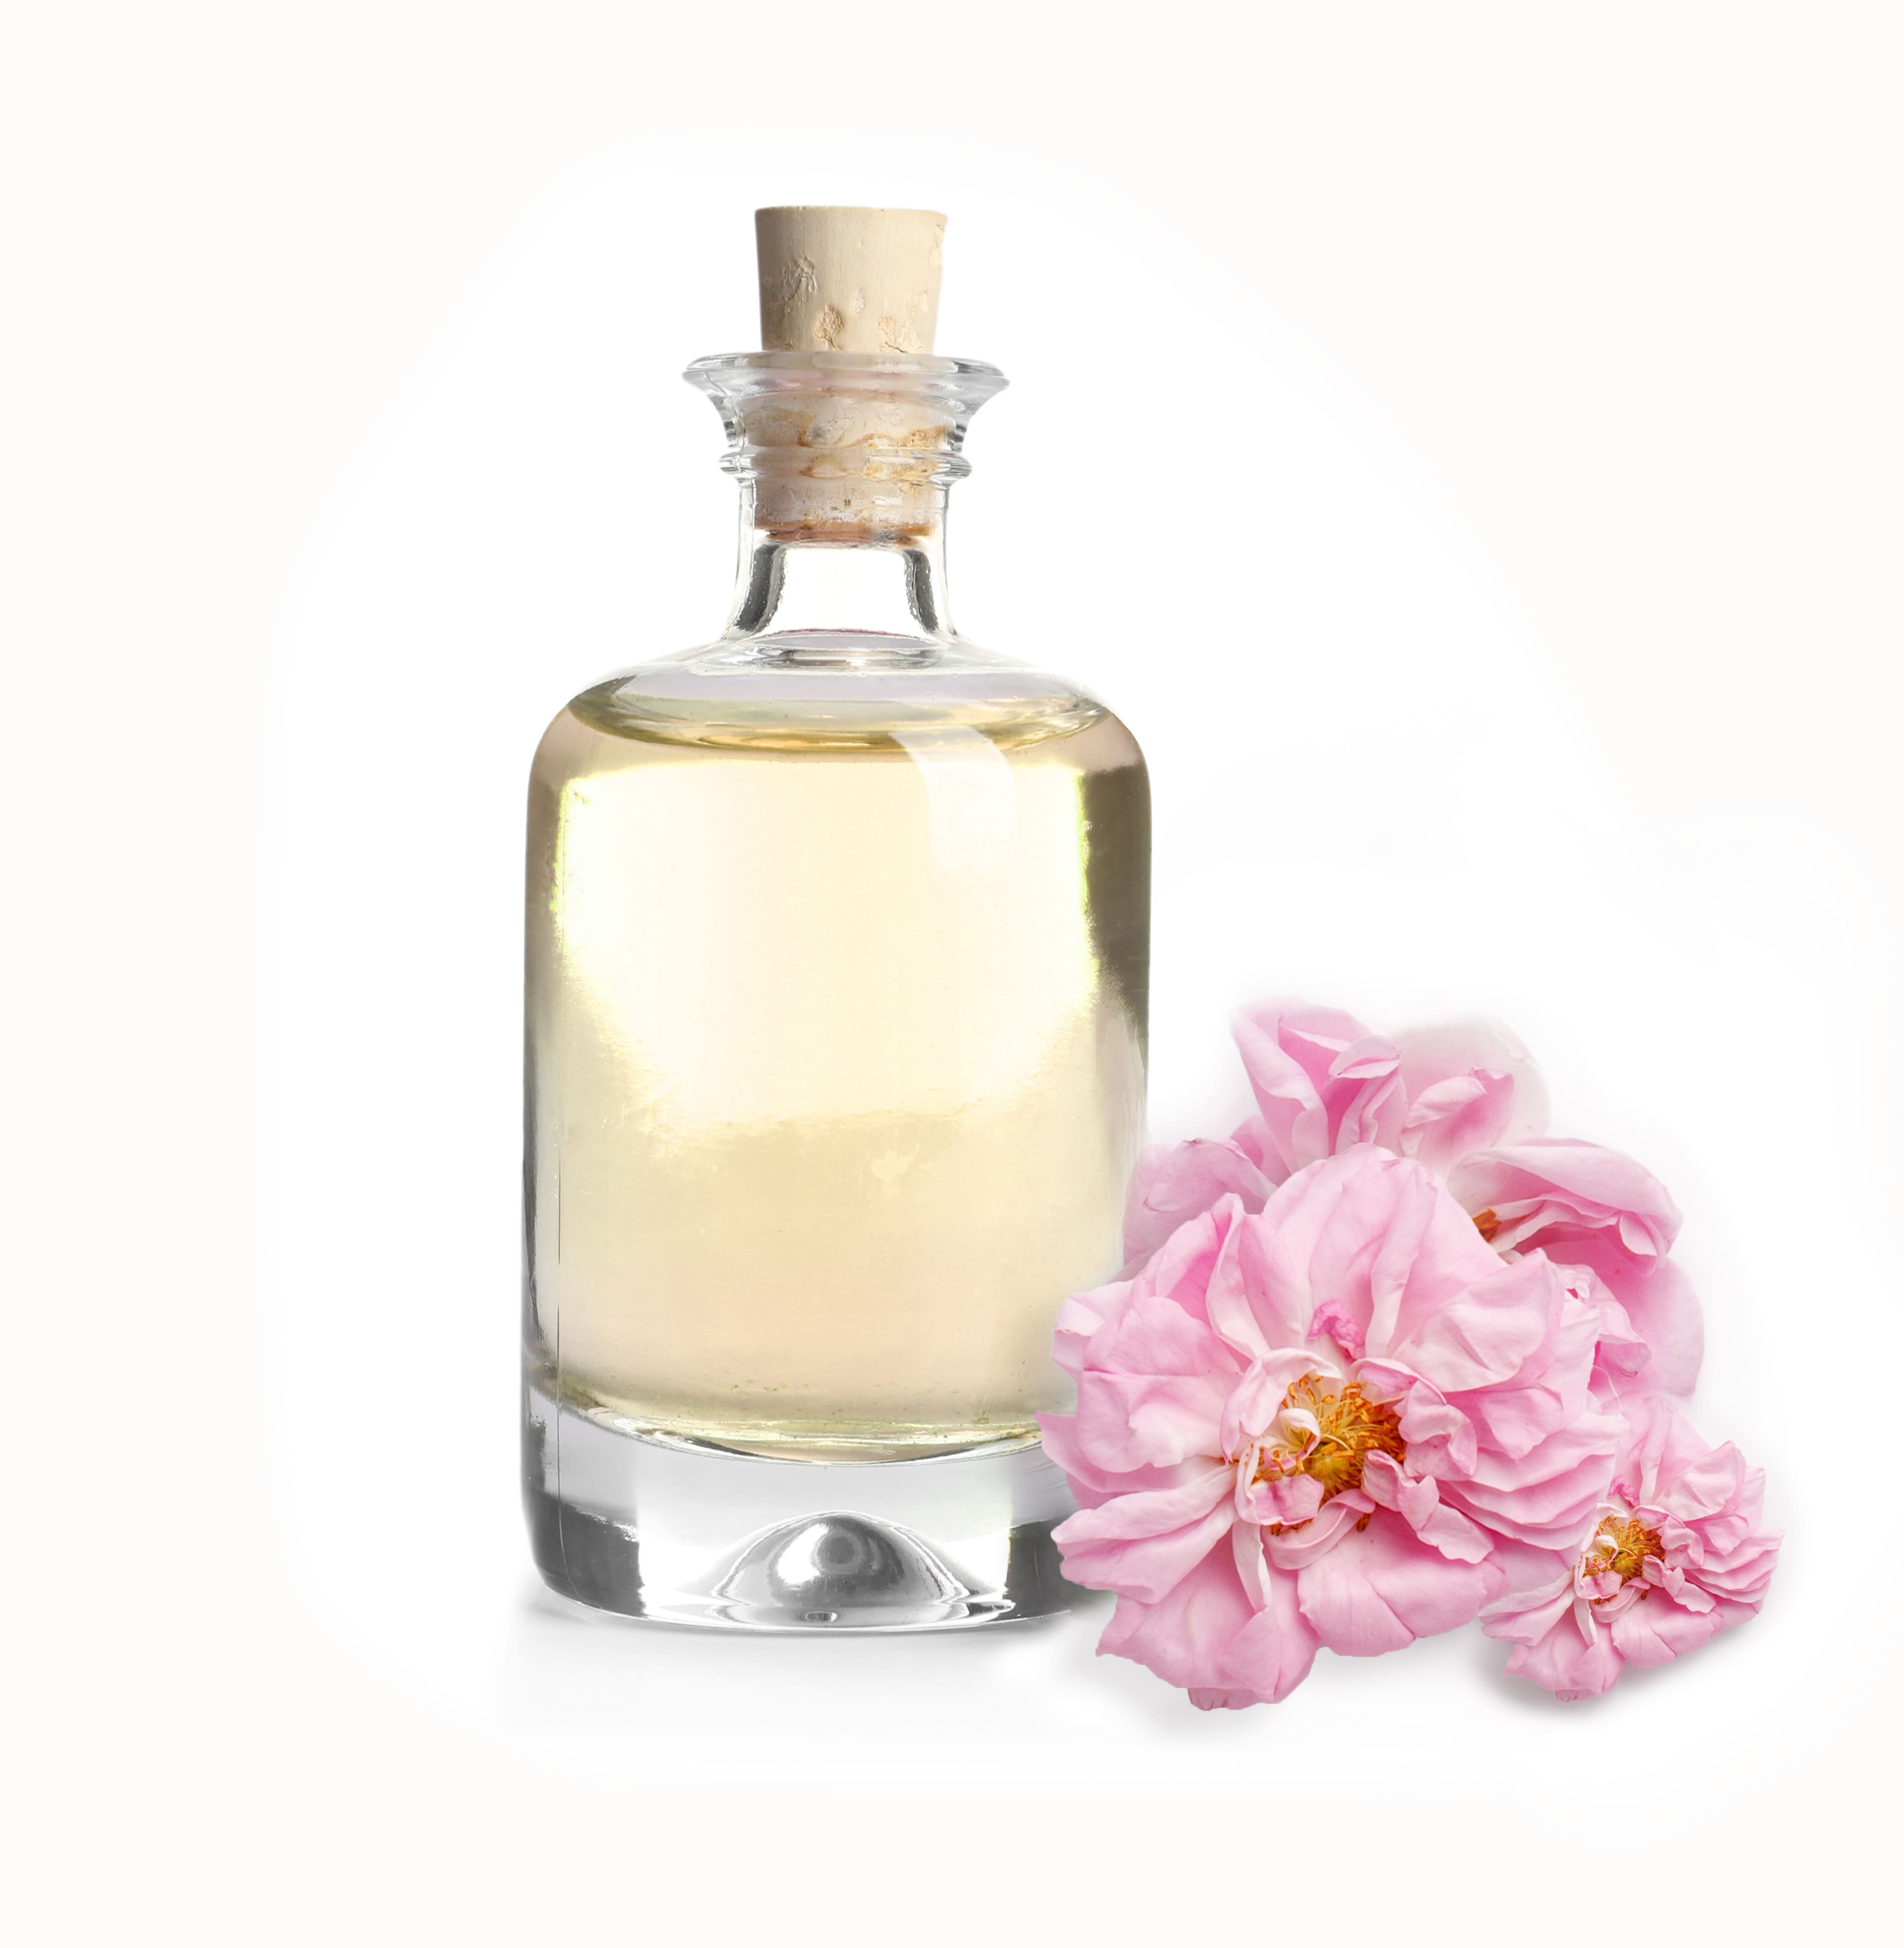 Rosenblütenöl - aus der Damaszenser Rose  - harmonisiert, regeneriert und stärkt den Aufbau der Haut: hilfreich bei Couperose